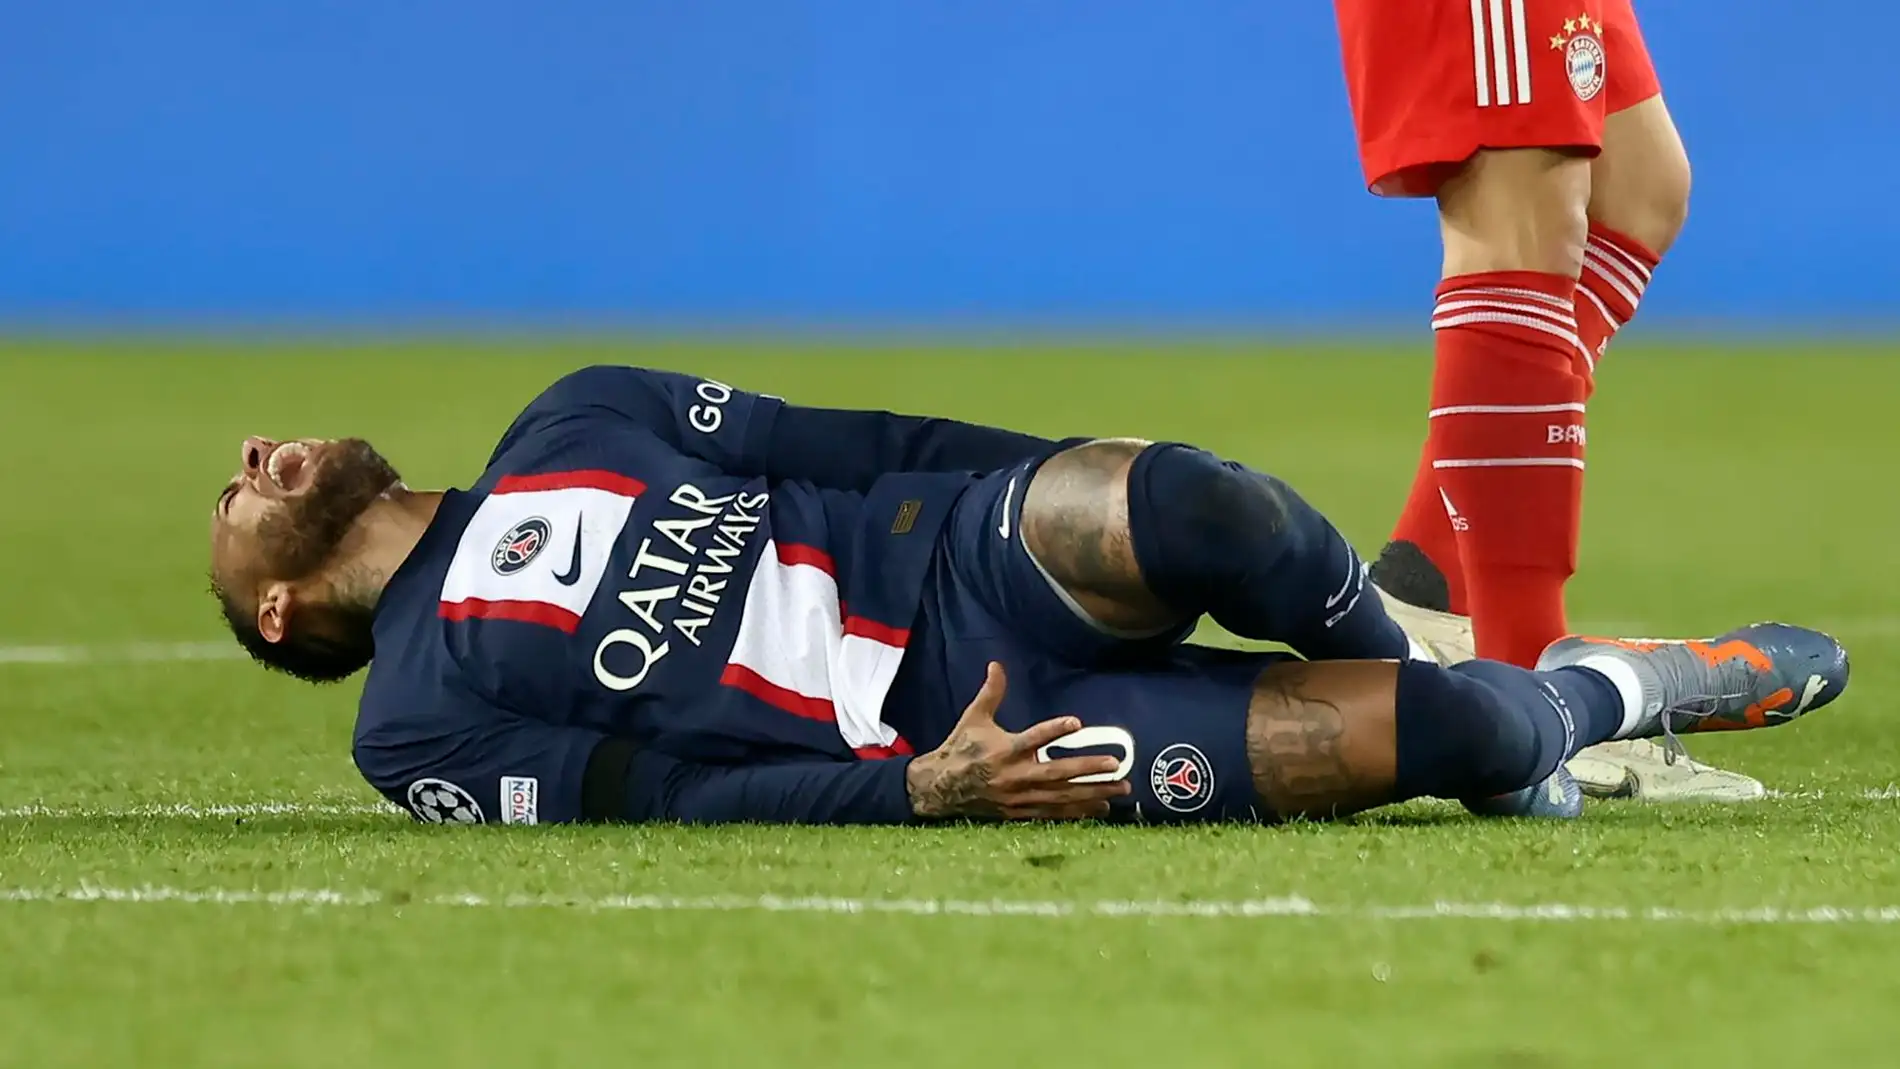 Imagen de Neymar Jr en el momento de su lesión